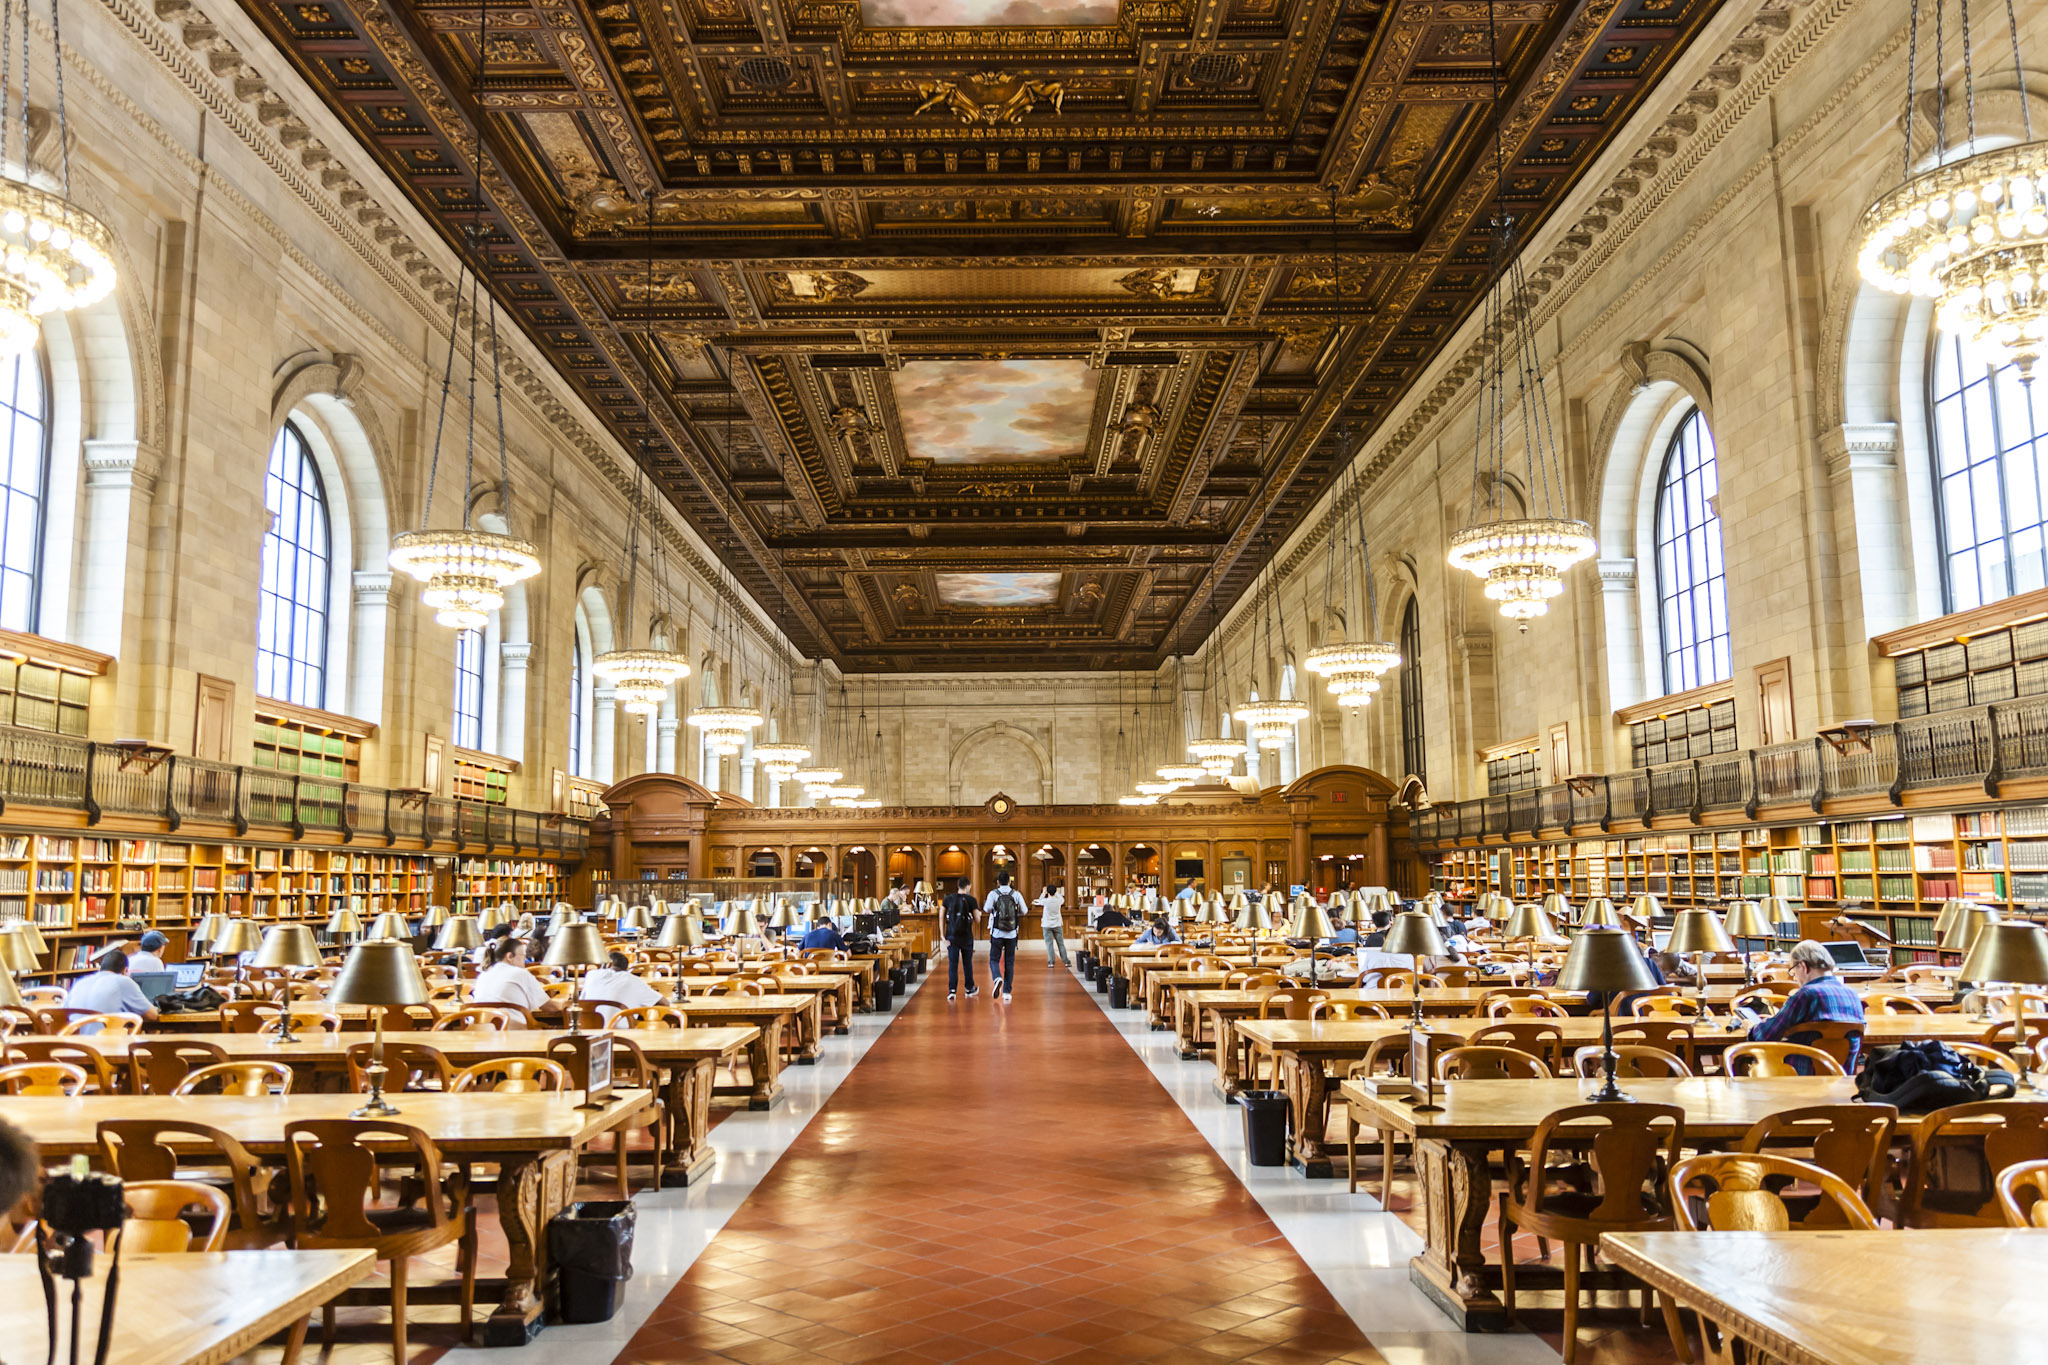 rose reading room NY public library